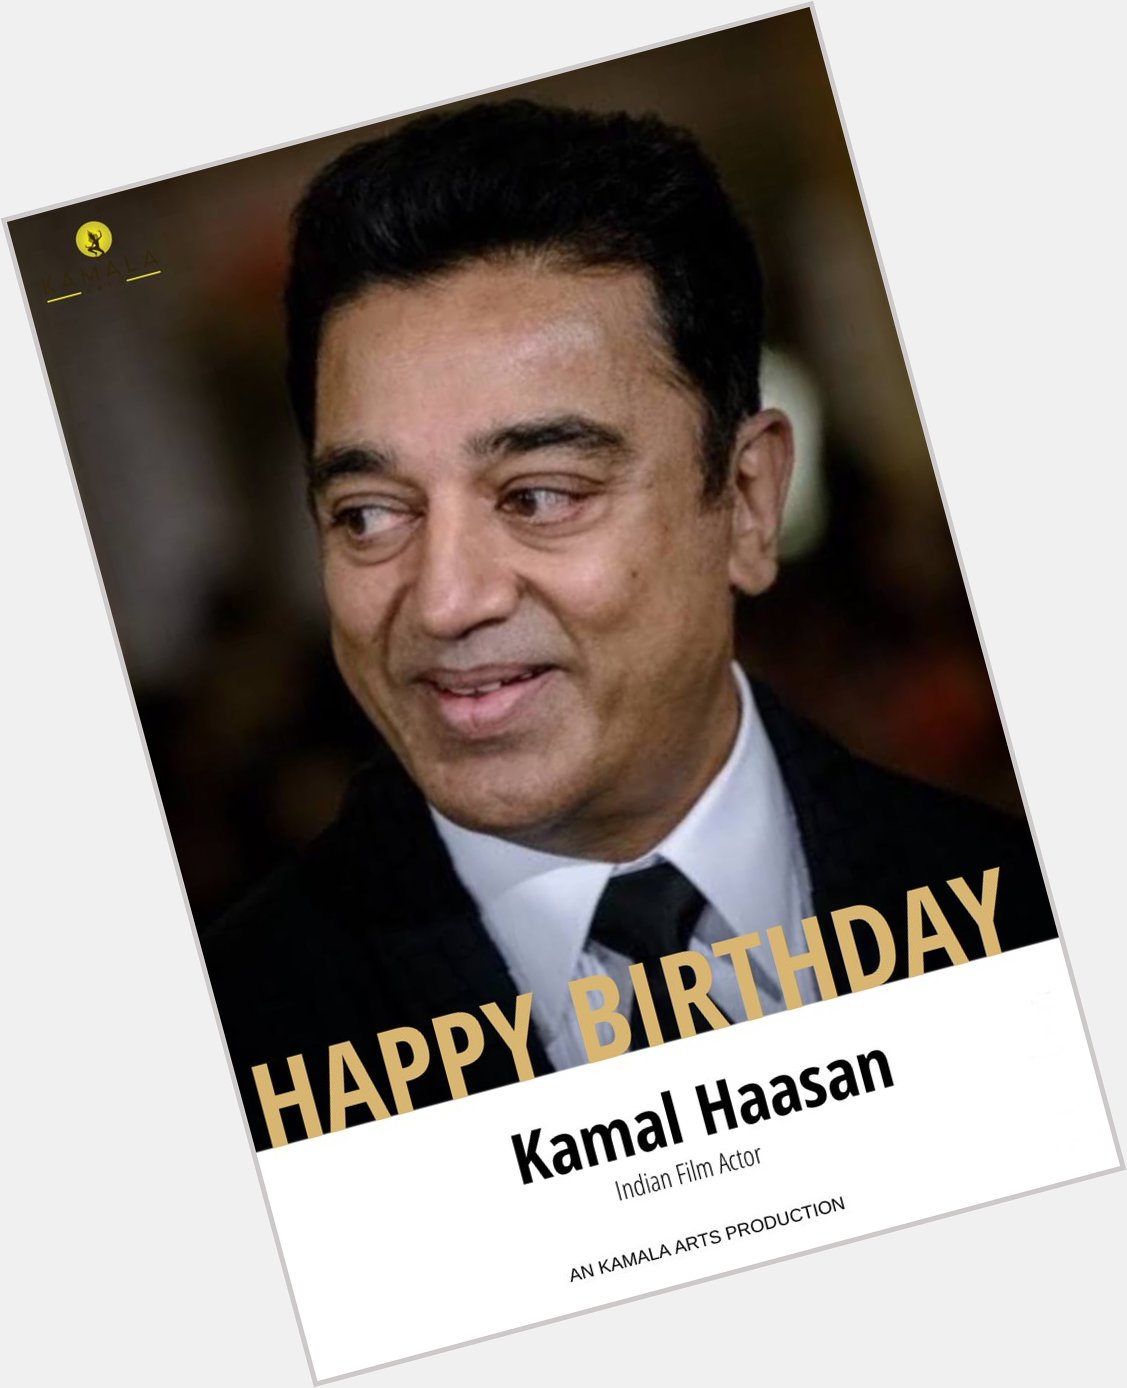 Happy birthday Kamal Haasan 